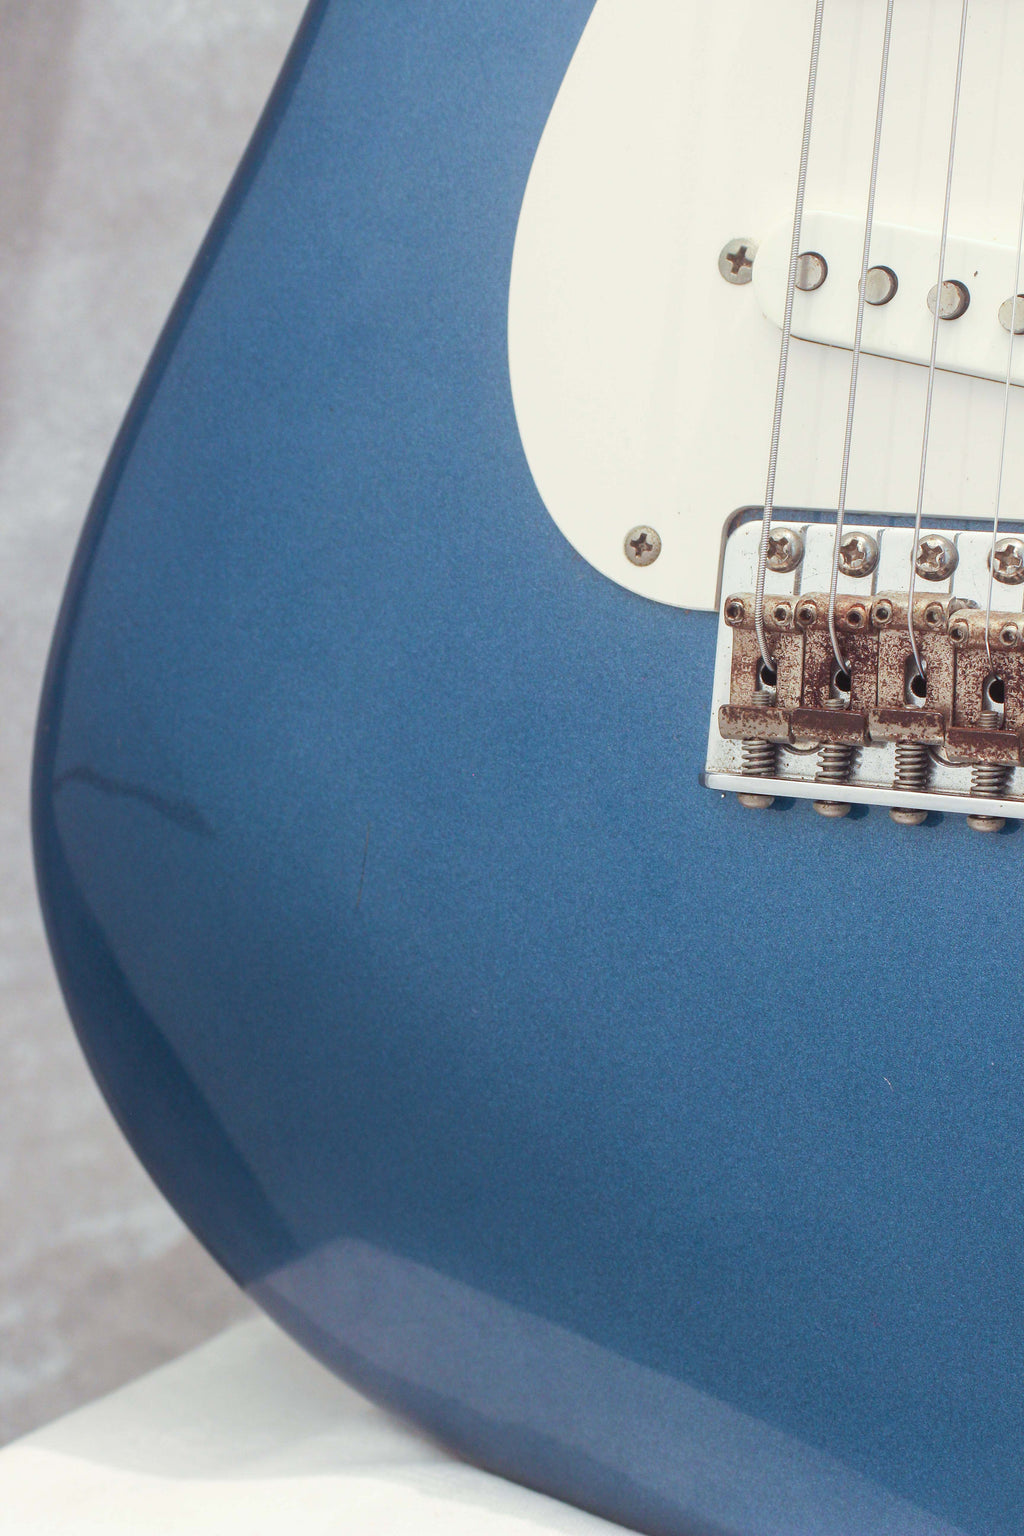 Fender Japan '57 Stratocaster ST57-58US Old Lake Placid Blue 2004